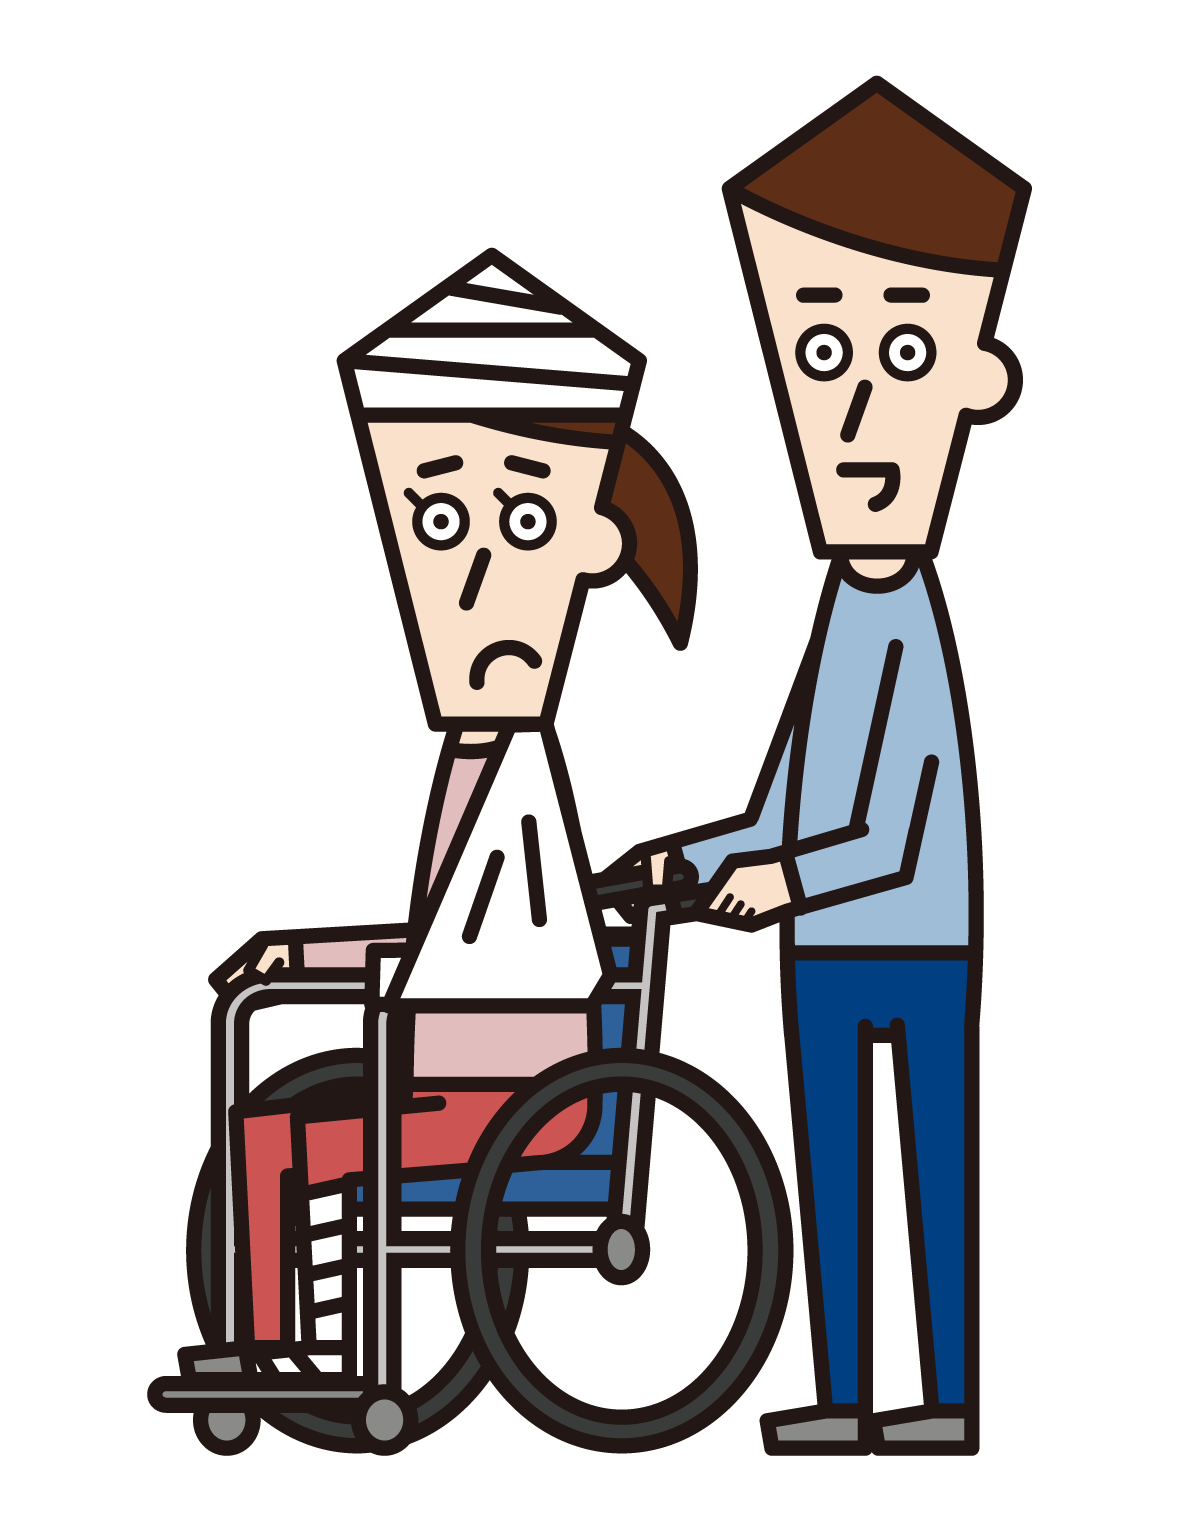 嚴重受傷和坐在輪椅上的人（女性）的插圖